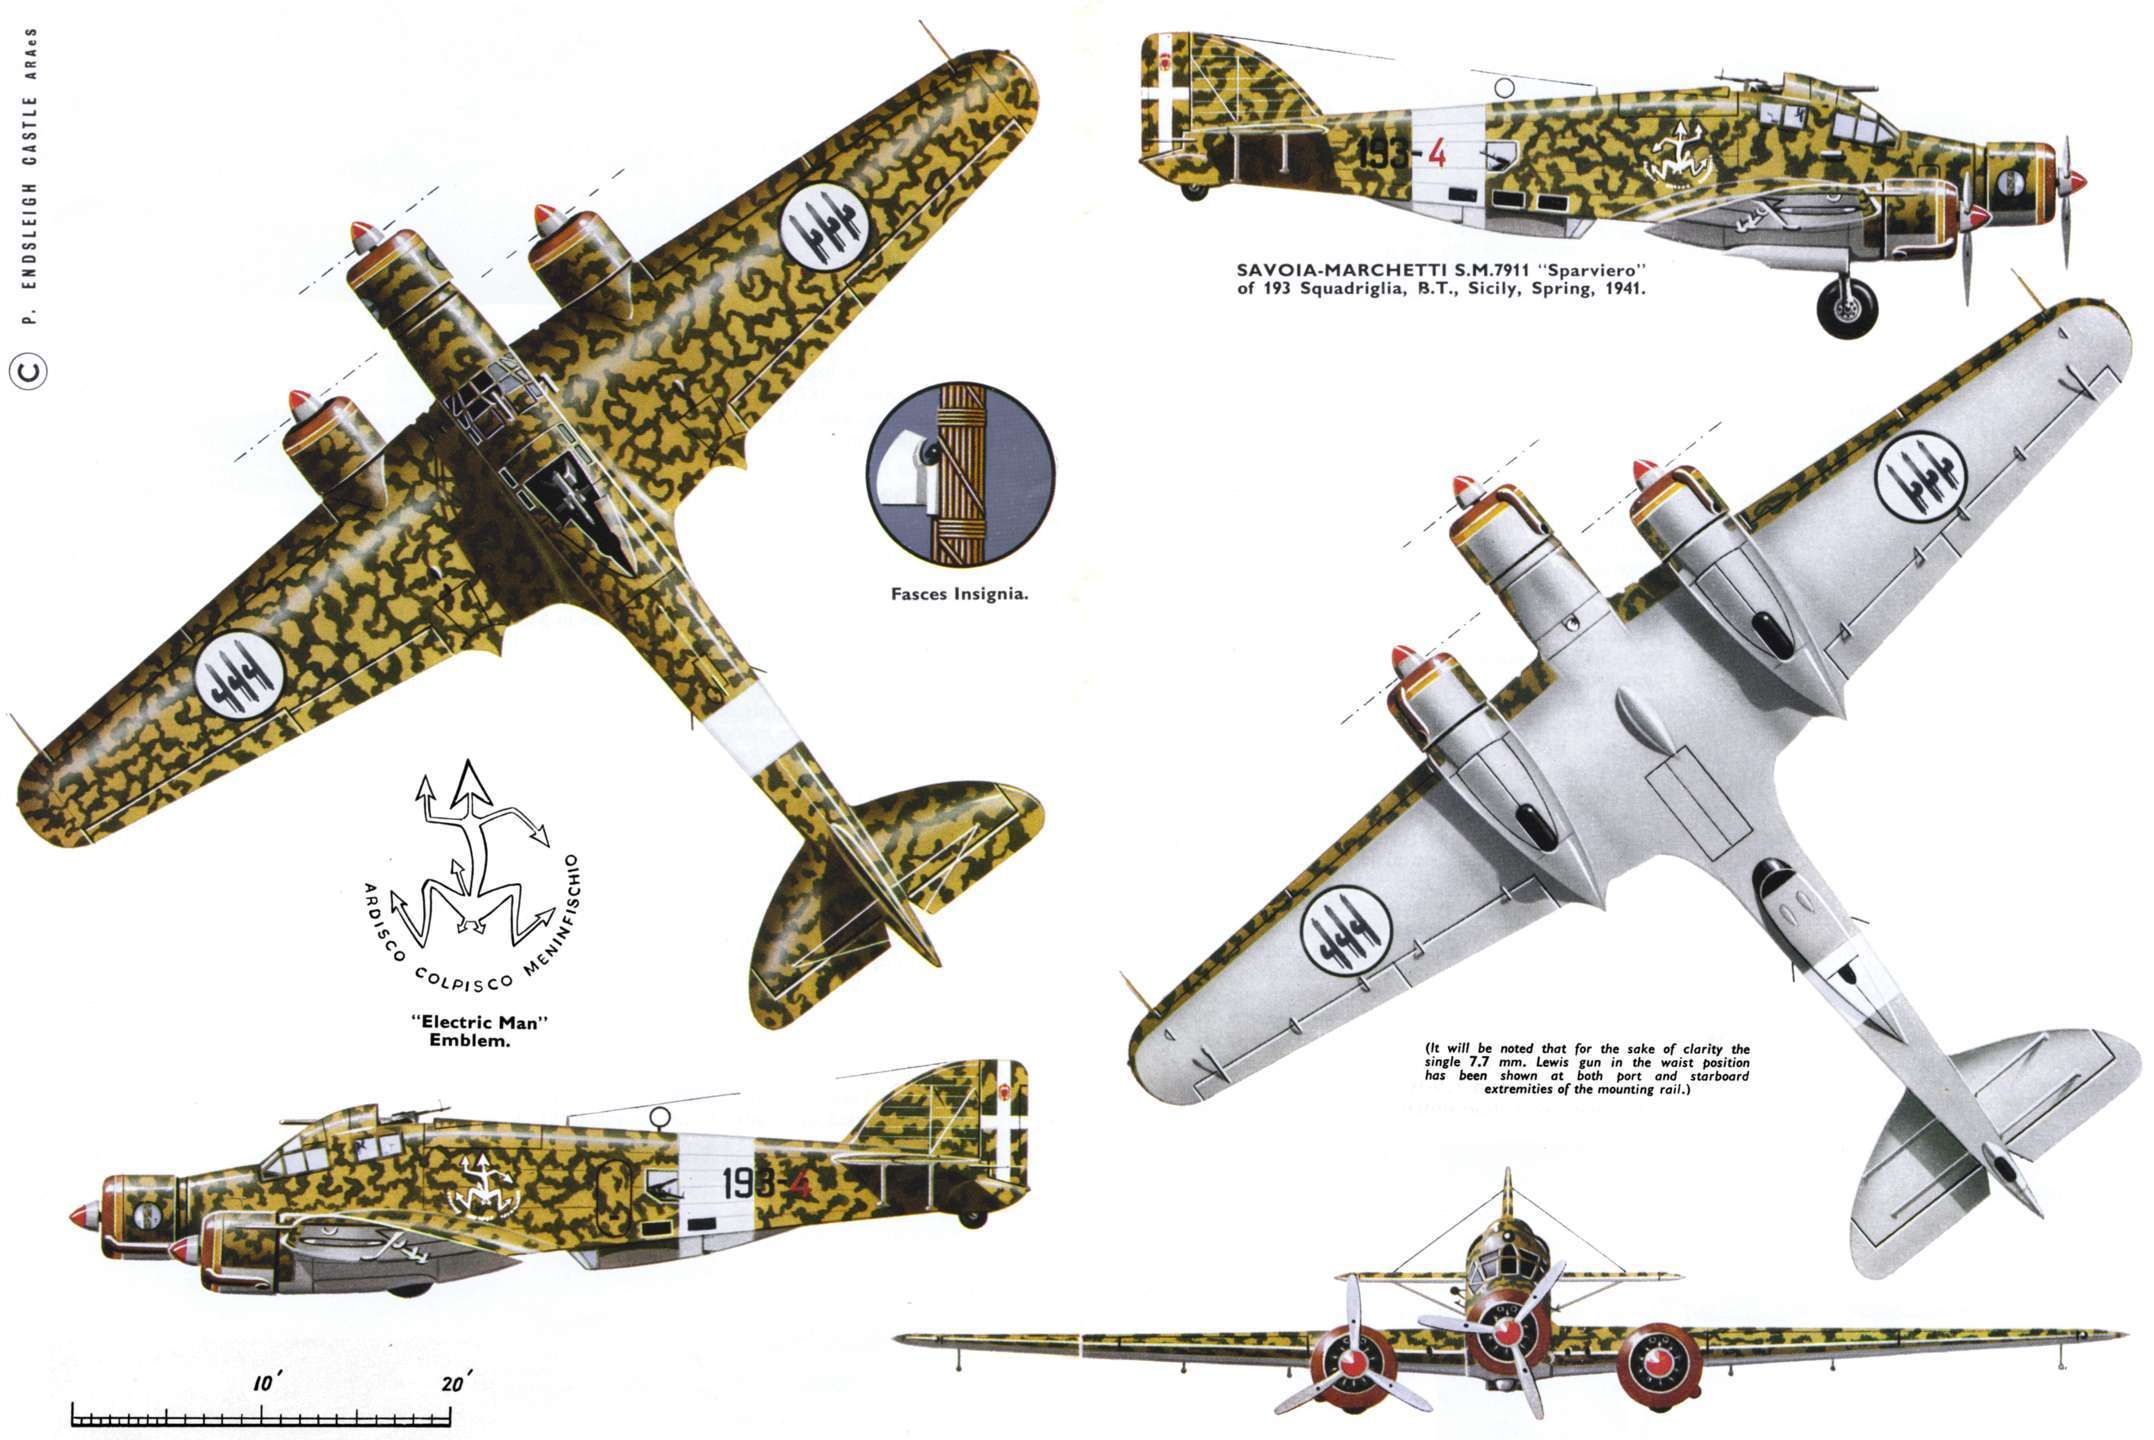 Бомбардировщик савойя-маркетти sm.79 «спарвиеро»